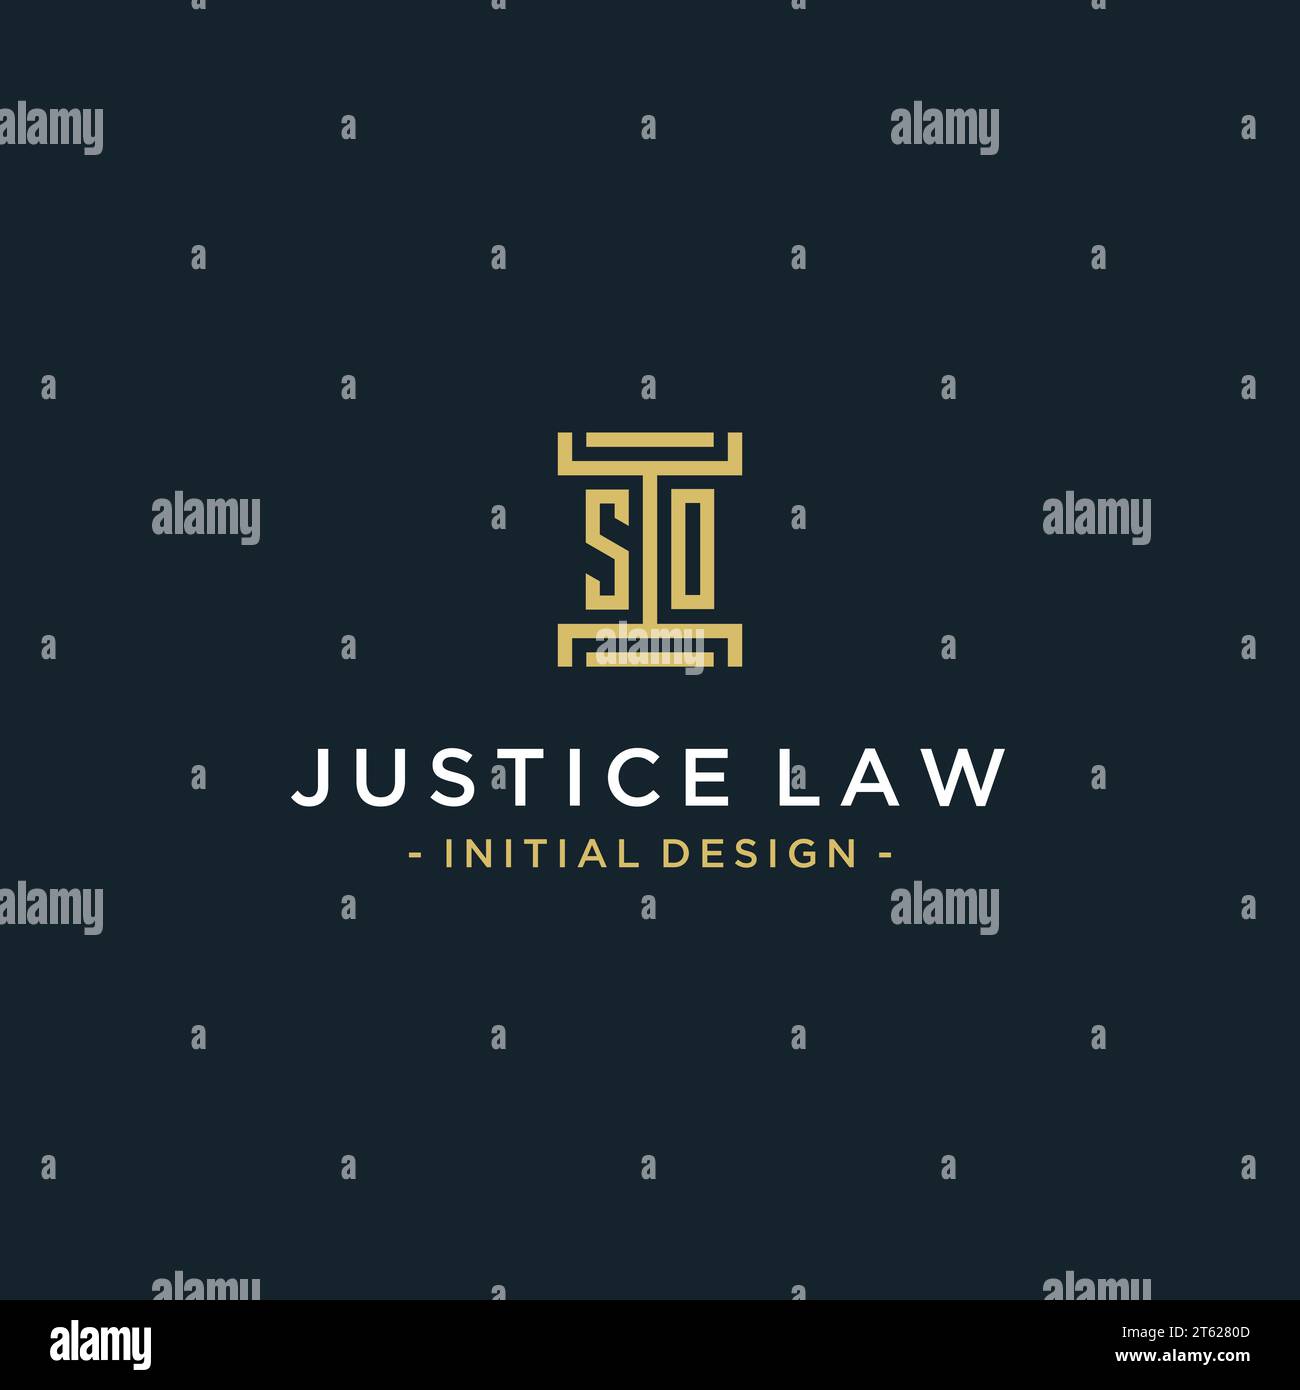 DONC conception initiale de monogramme de logo pour juridique, avocat, avocat et cabinet d'avocats Illustration de Vecteur